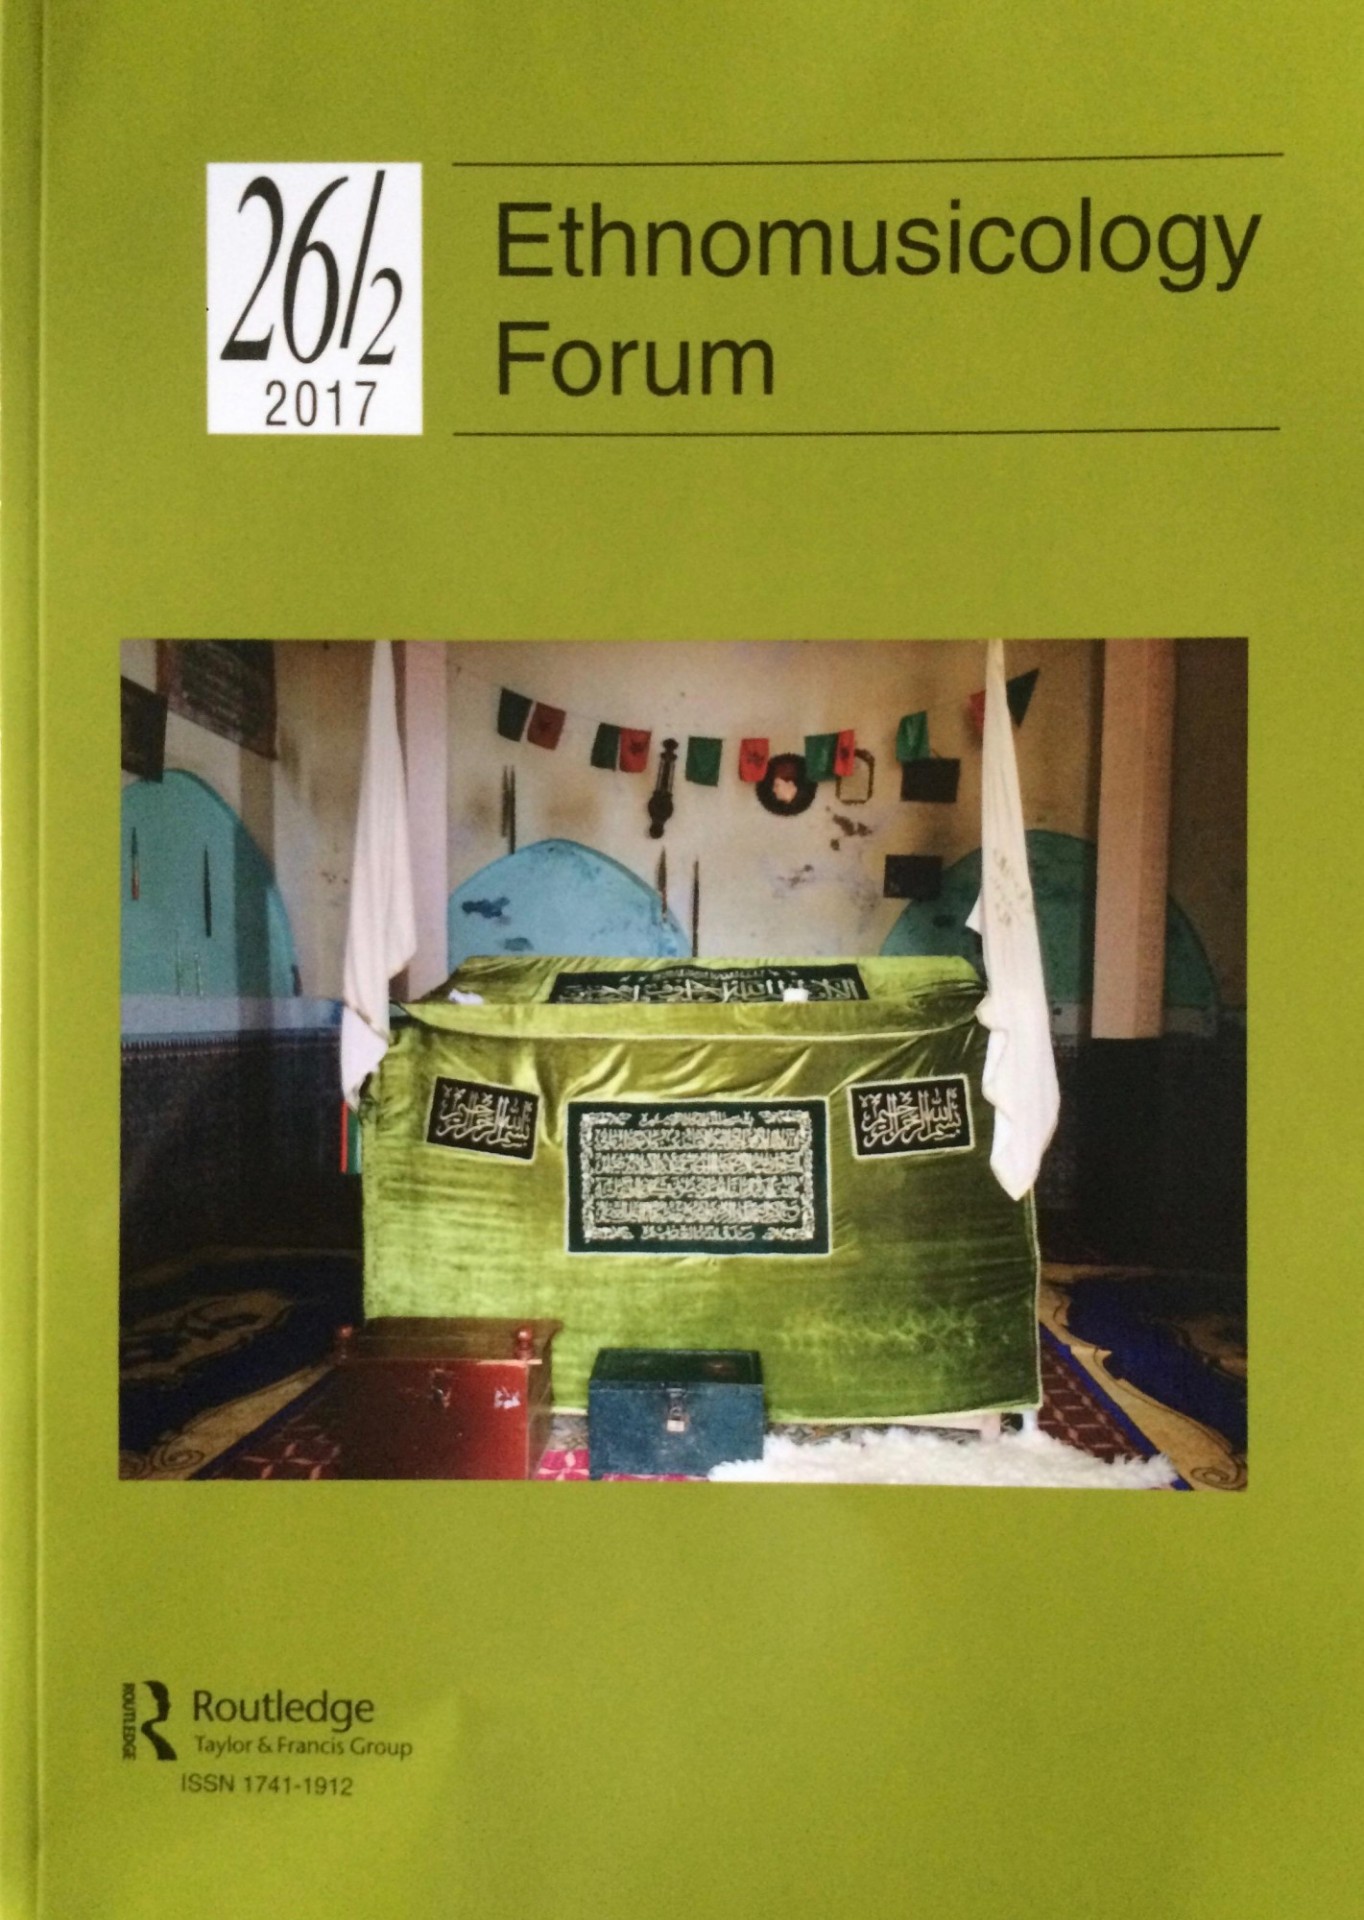 Ethnomusicology Forum Volume 26, Issue 2 cover.